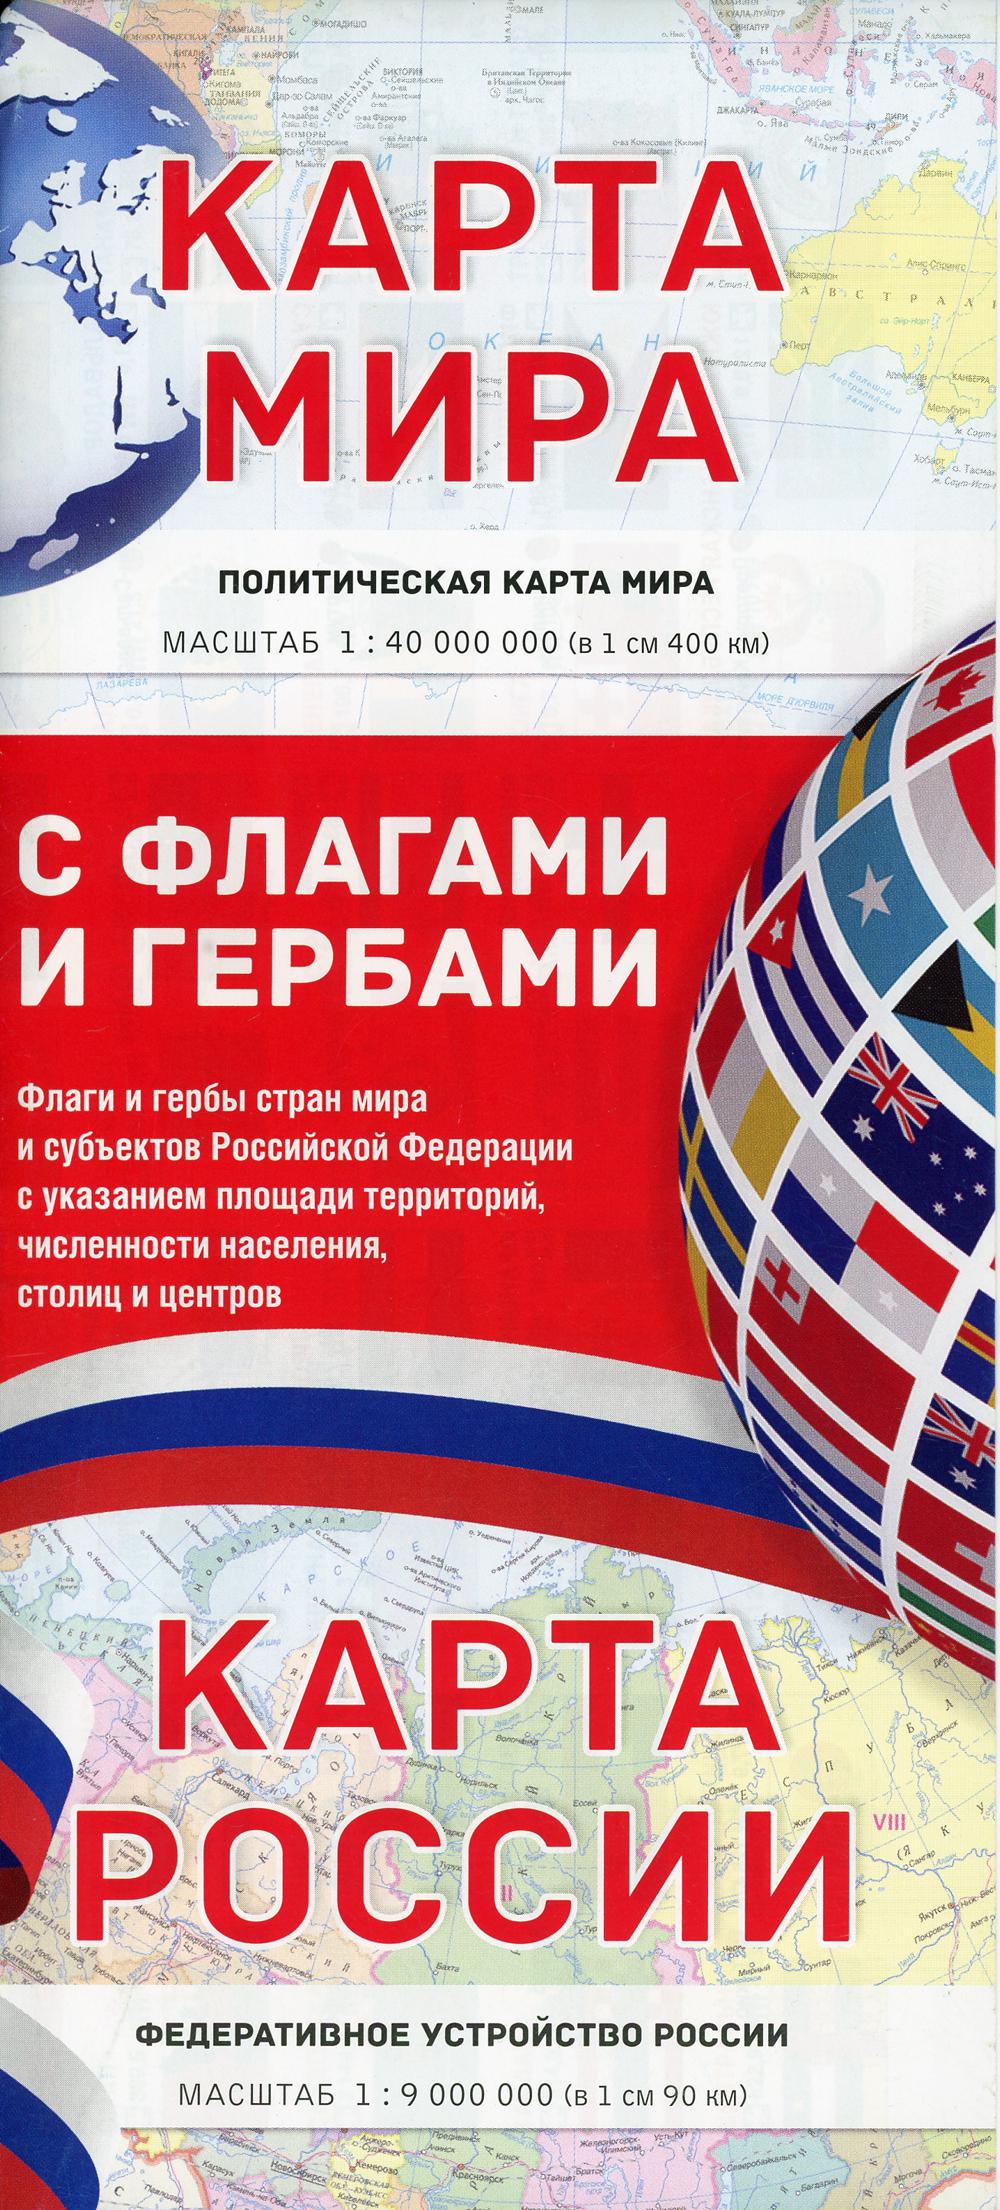 Карта мира/ карта России с флагами и гербами (складная)